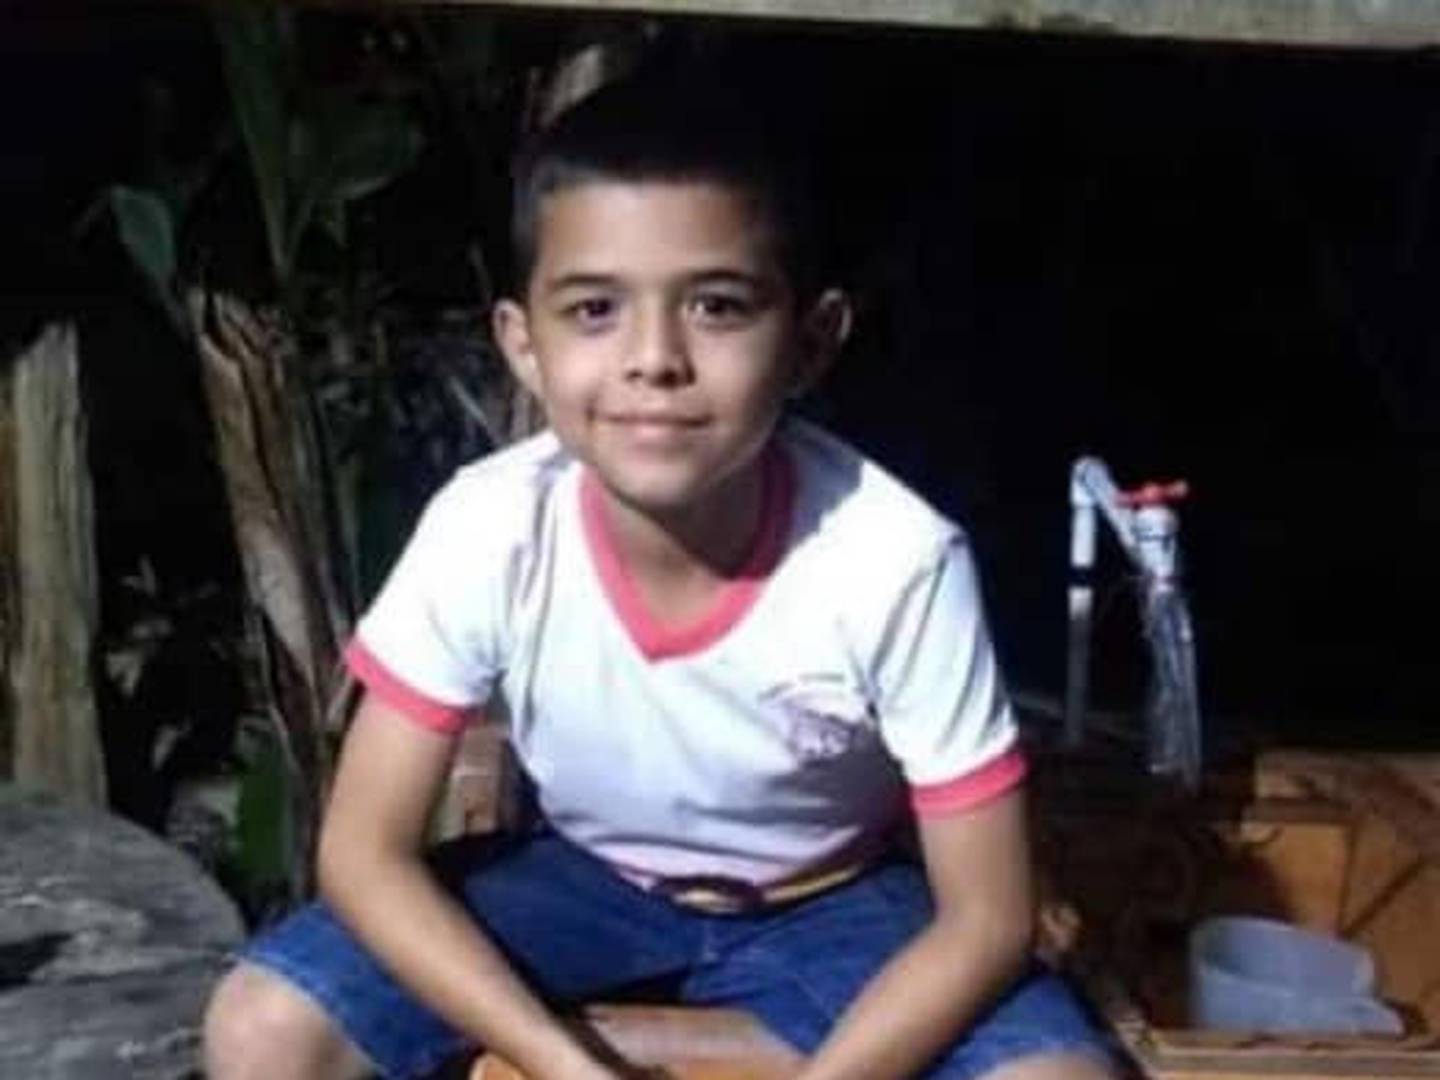 El pequeño Jafet Gatica, de 11 años, murió atropellado por una pareja que viajaba en moto. Foto autorizada por la madre del menor.